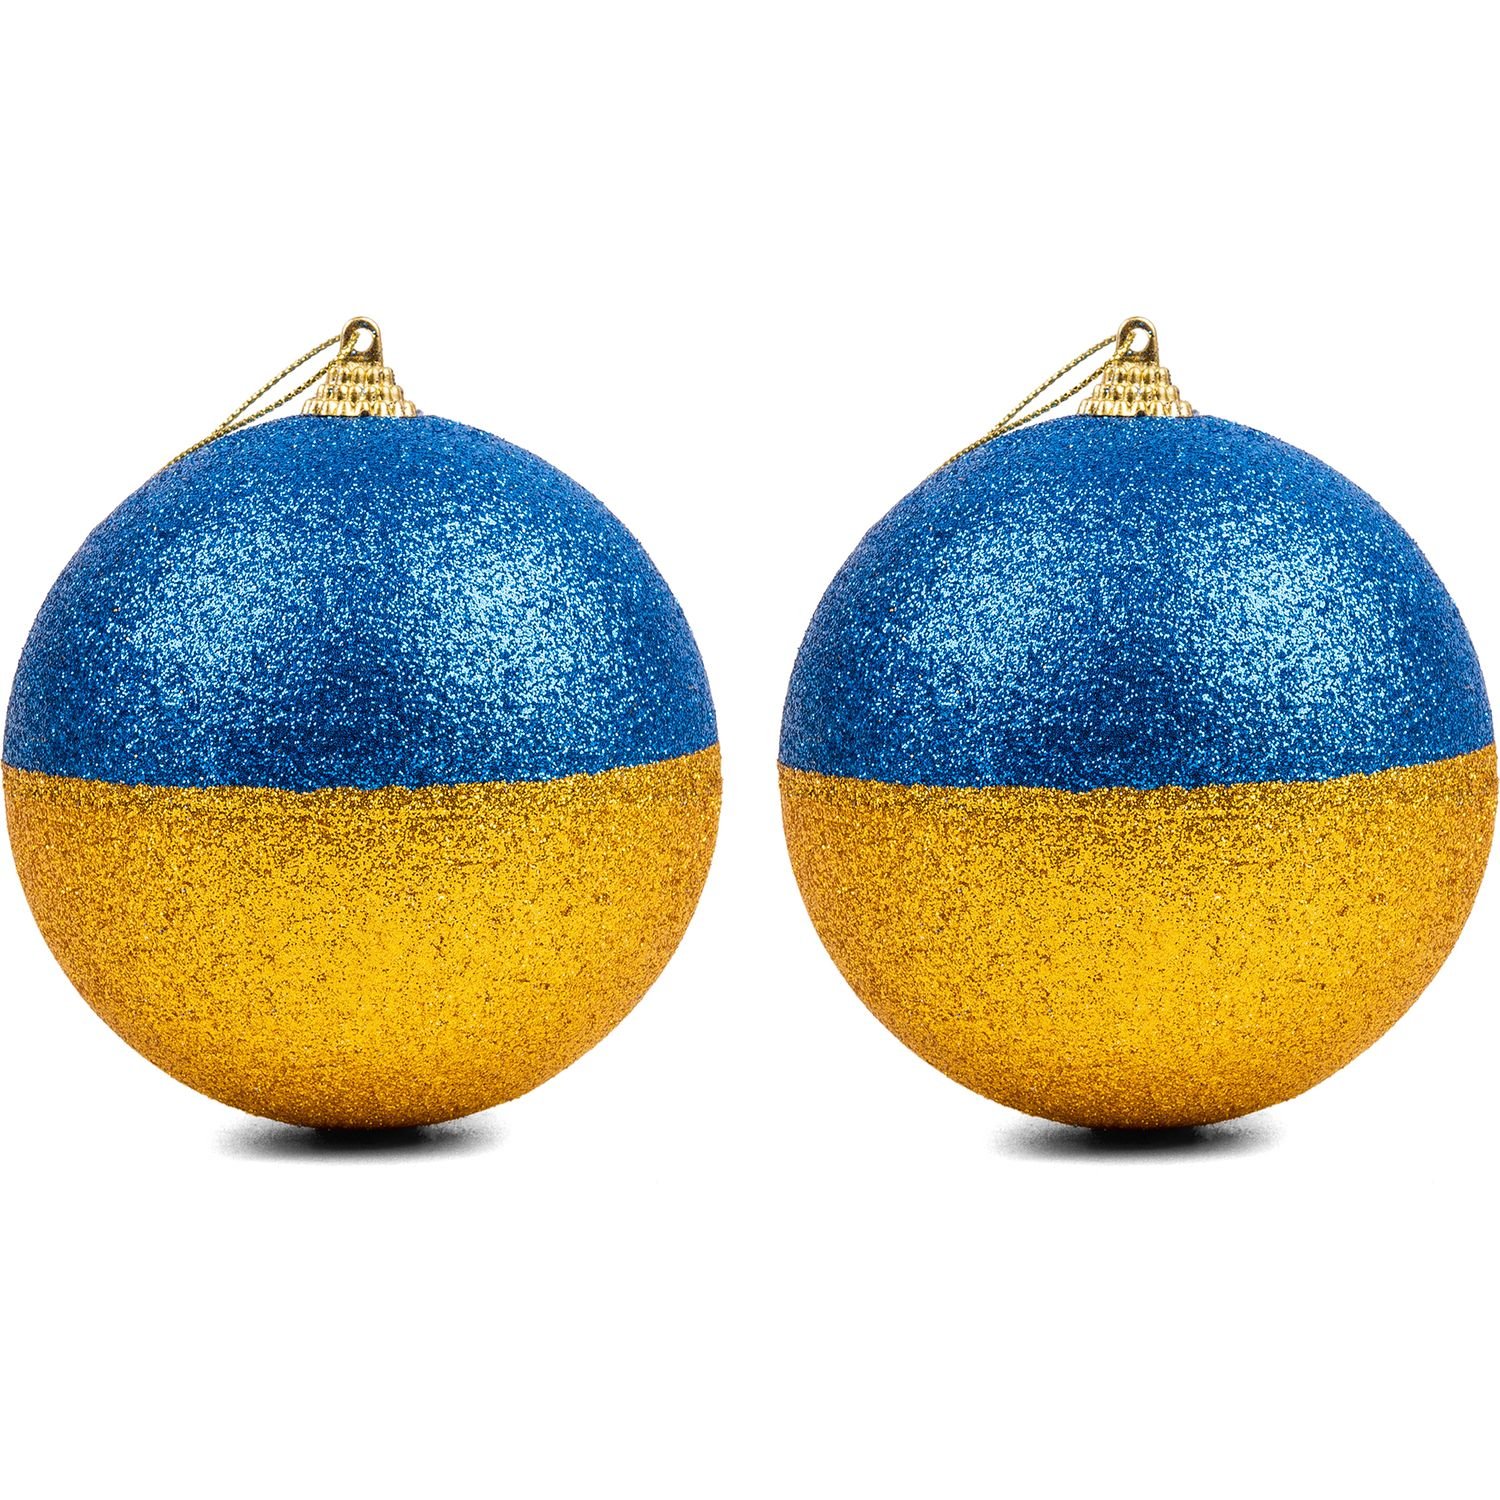 Набір новорічних куль Novogod'ko 10 см 2 шт. жовто-блакитний (974890) - фото 2